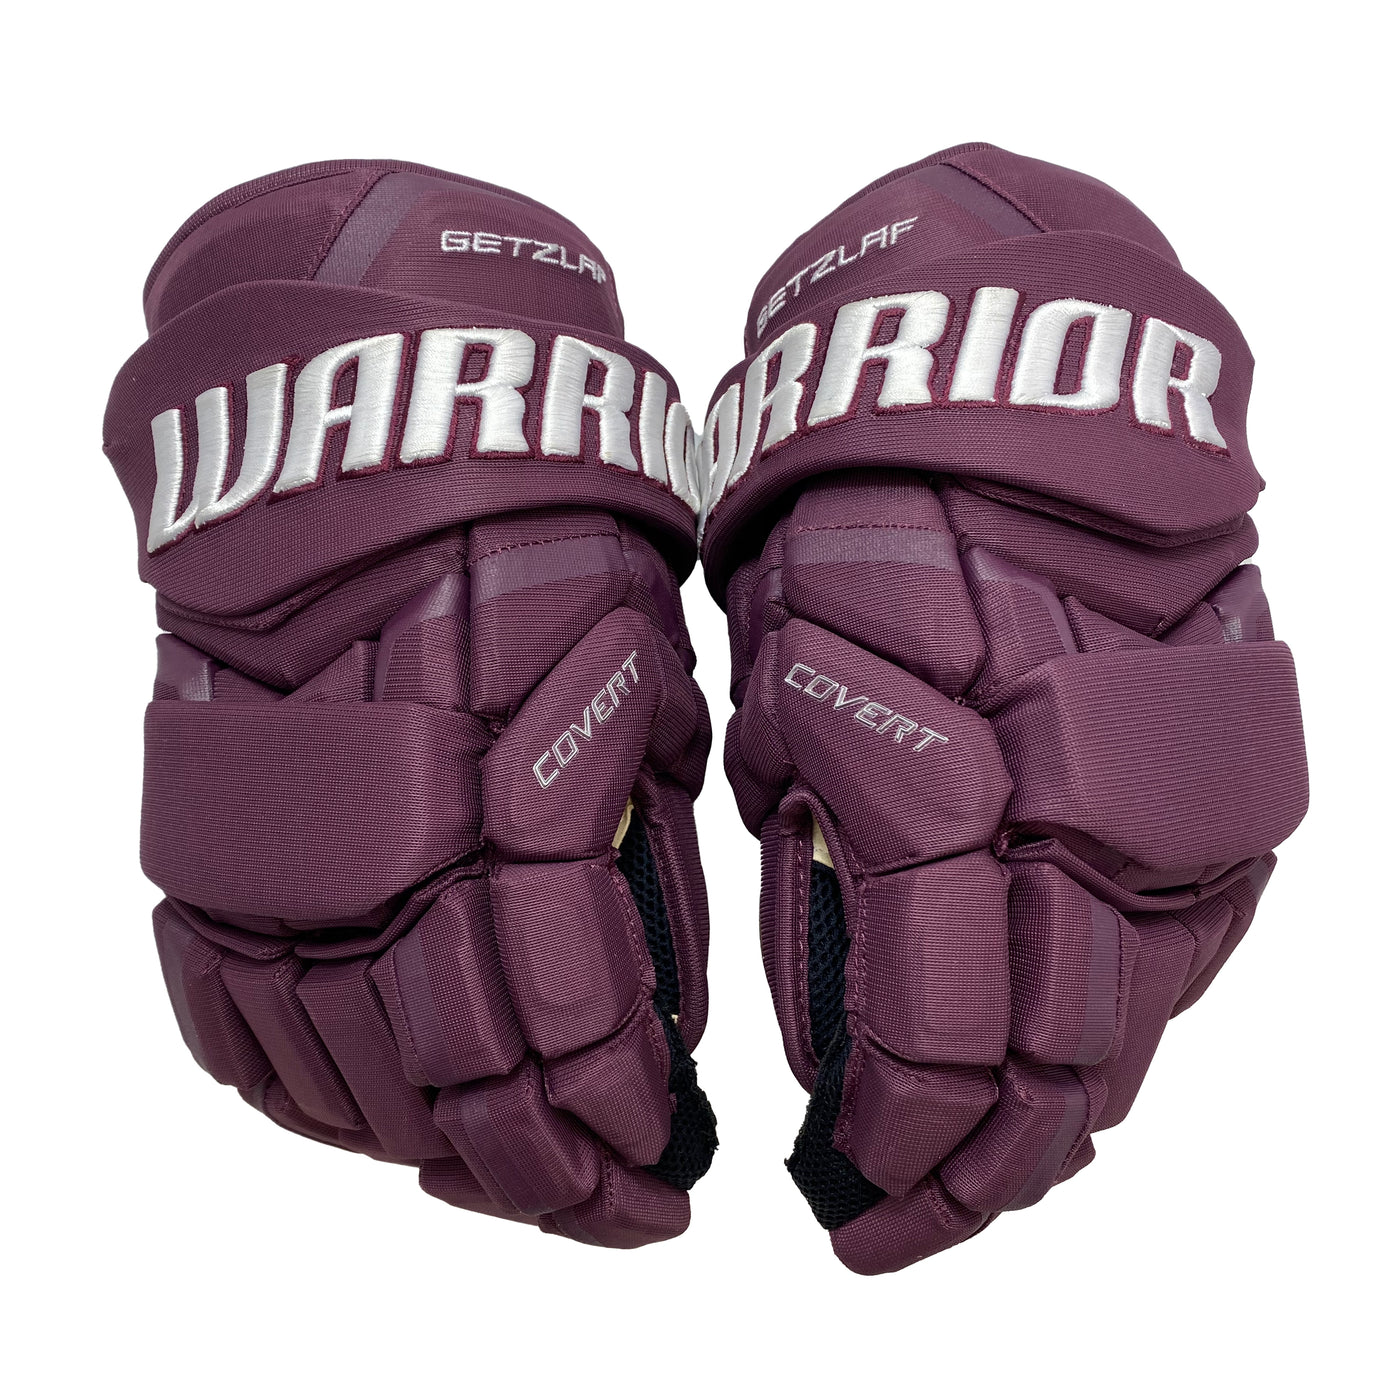 Warrior Covert QRL - Anaheim Ducks - Reverse Retro Pro Stock Gloves - Ryan Getzlaf